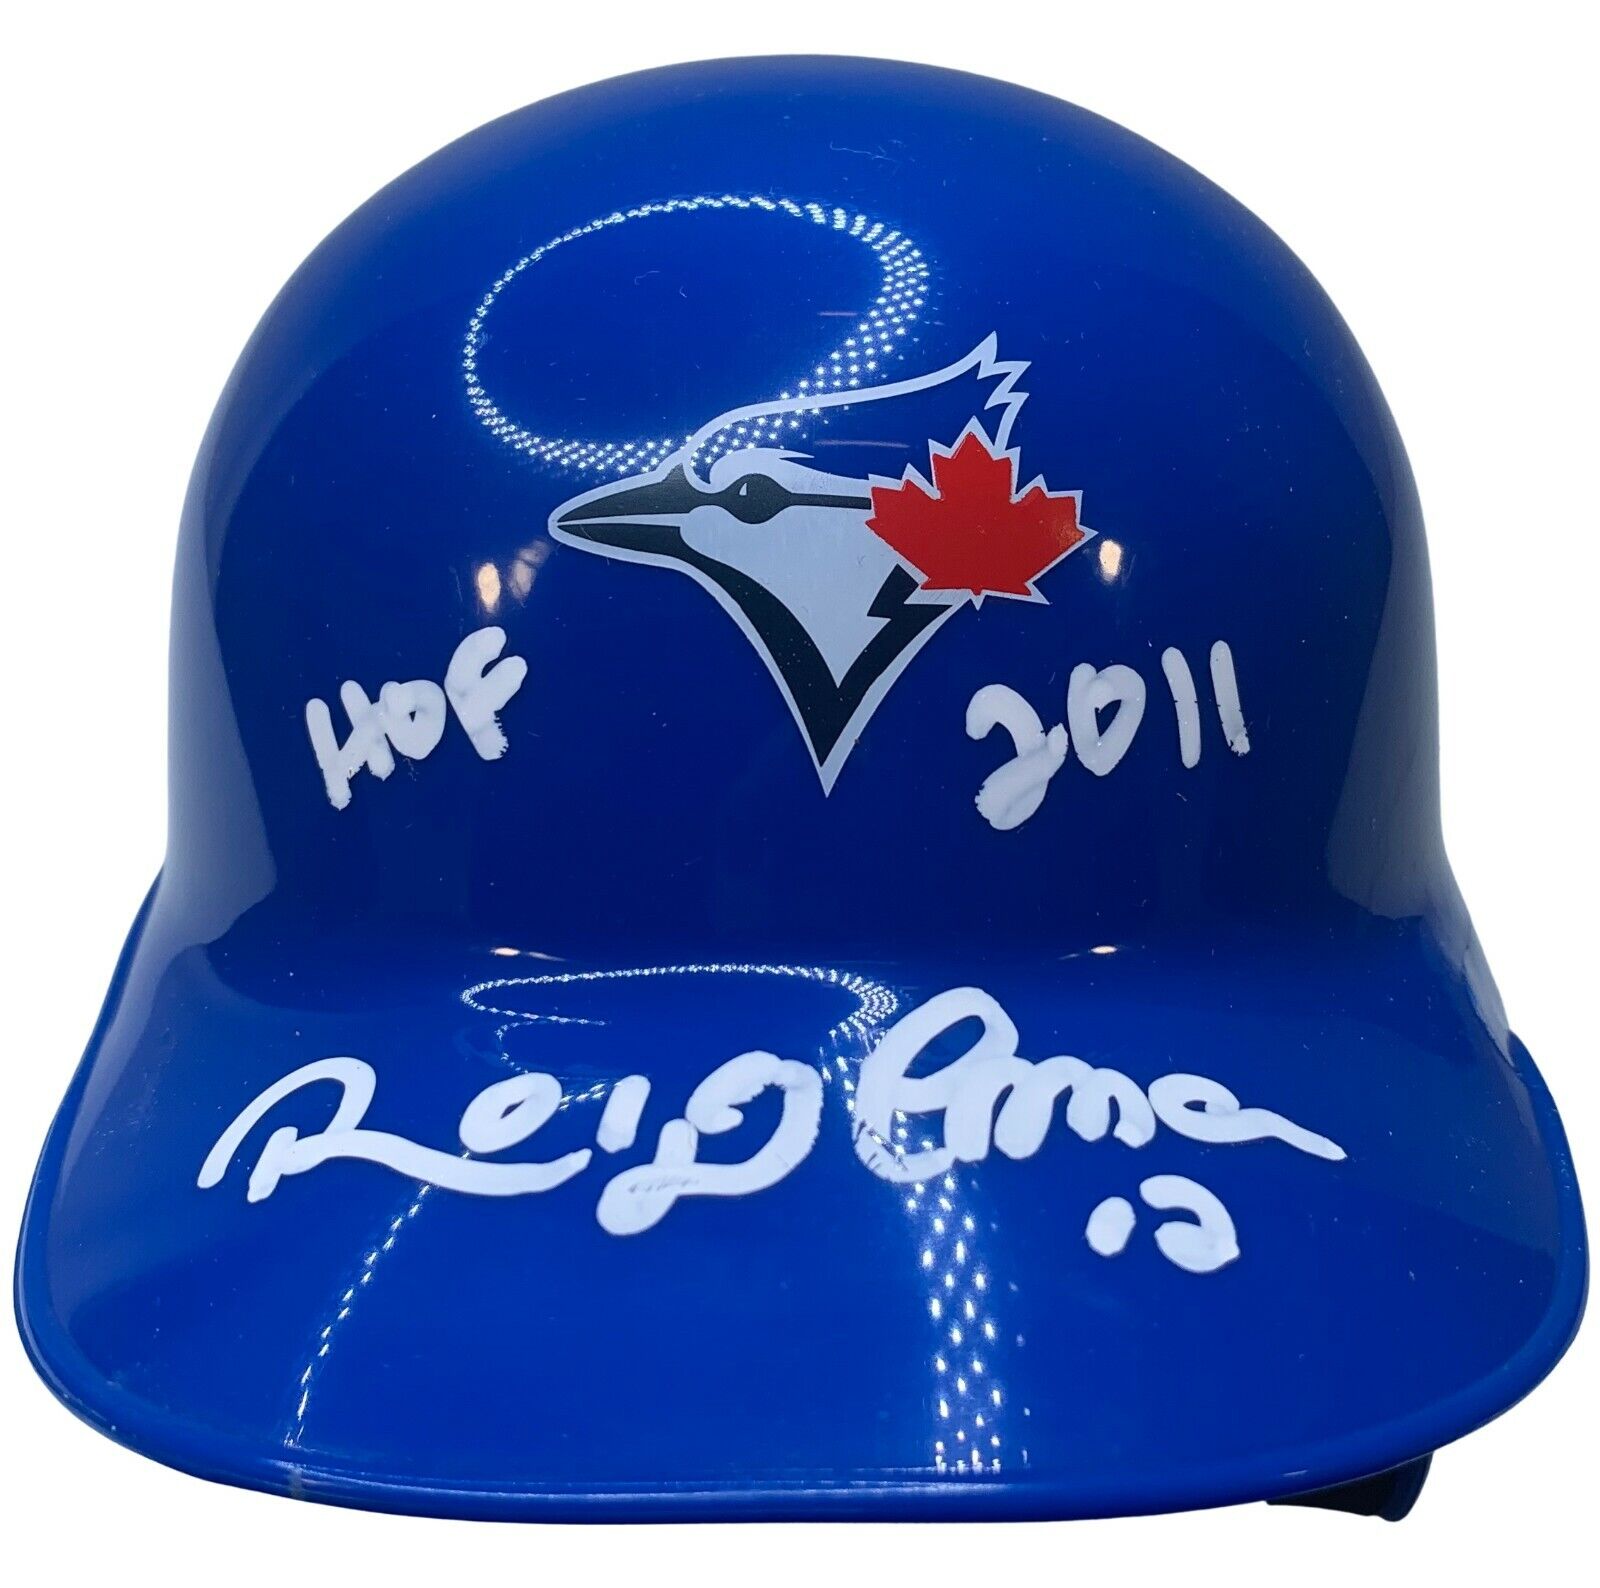 Roberto Alomar autographed signed inscribed mini helmet Toronto Blue Jays PSA